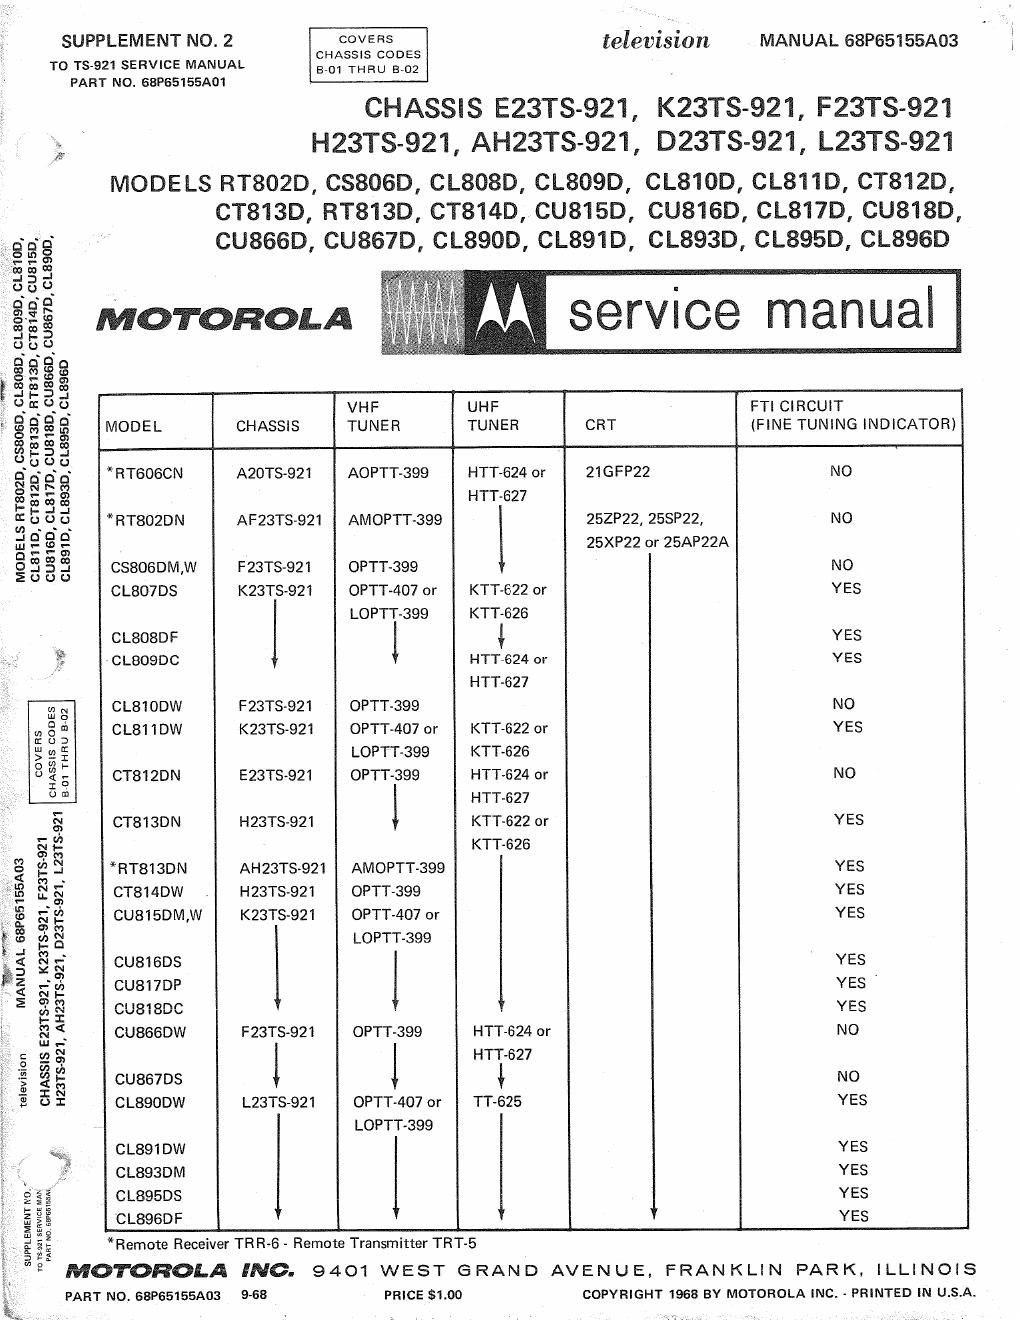 motorola cs 806 d service manual